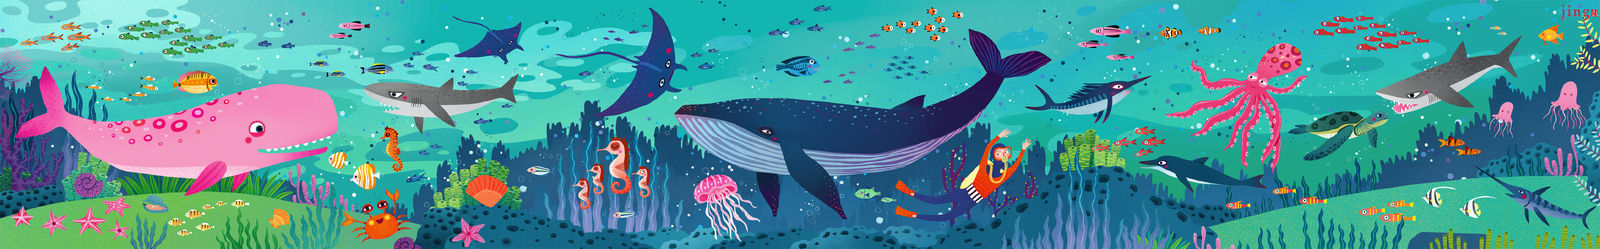 绘制的大横幅海洋动物海洋鱼类拼图插画 鲸鱼 鲨鱼 海豚 蝙蝠鱼 海马 水母 潜水员 探险头像同人高清图